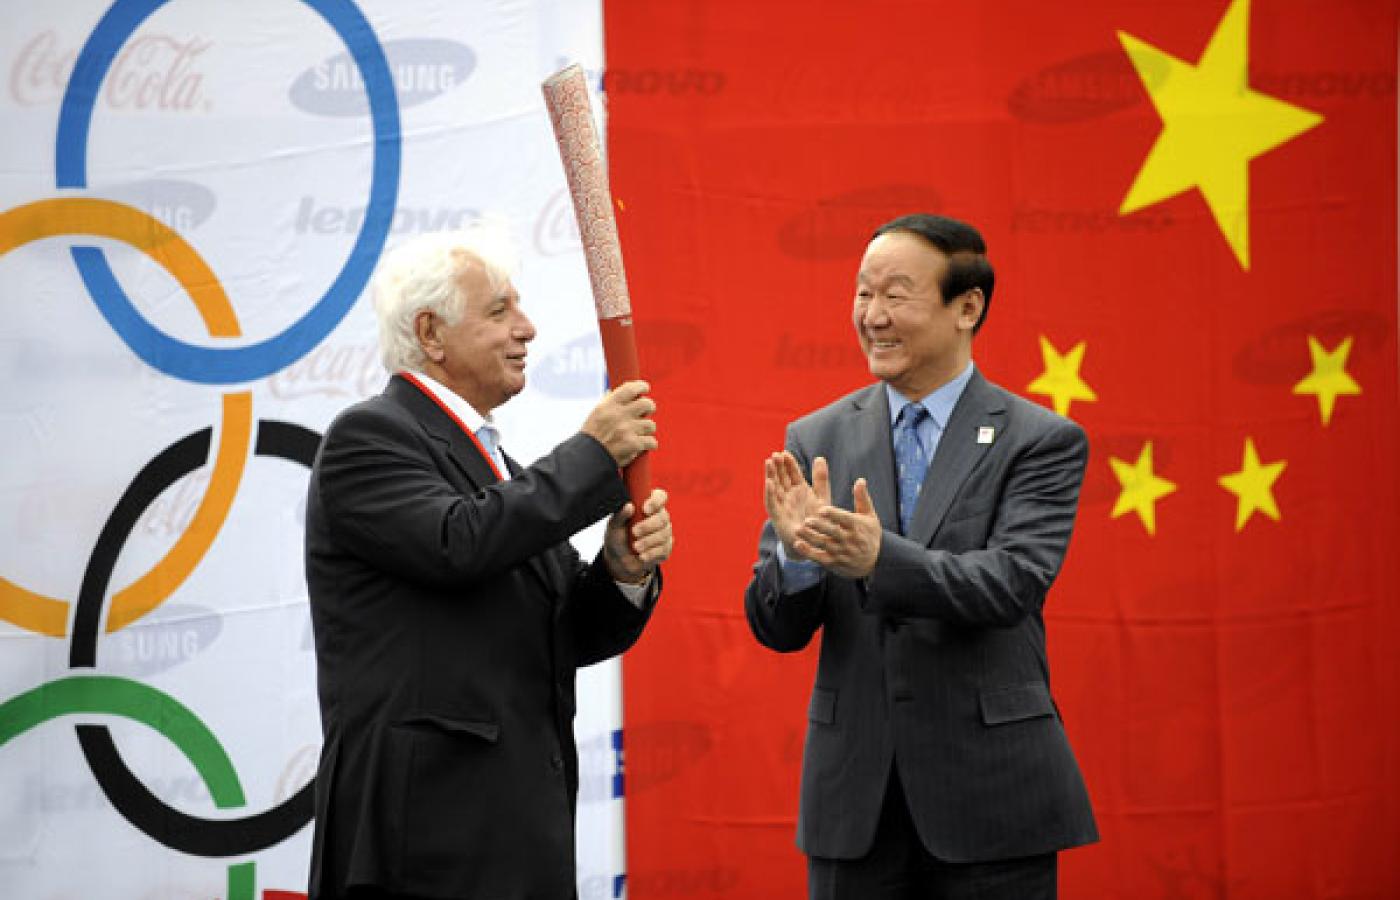 Decyzja MKOl dająca olimpiadę Chinom została przez świat zaakceptowana dlatego, że zdawała się sprzyjać przyciągnięciu Pekinu bliżej naszych pozycji. Dziś widać, że to się nie udało